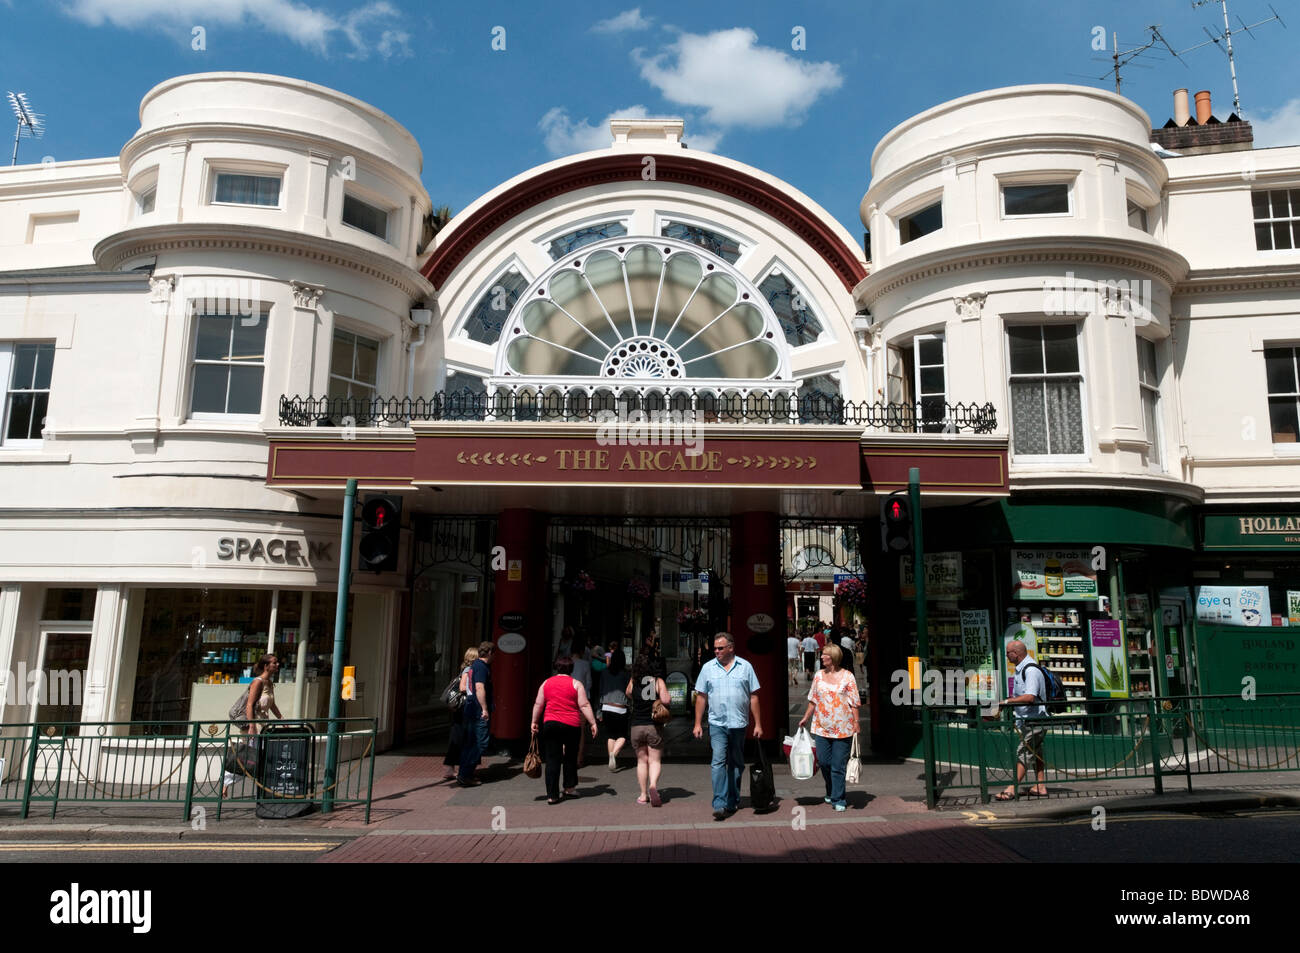 Le quartier commerçant d'arcade à Bournemouth, Angleterre, RU Banque D'Images